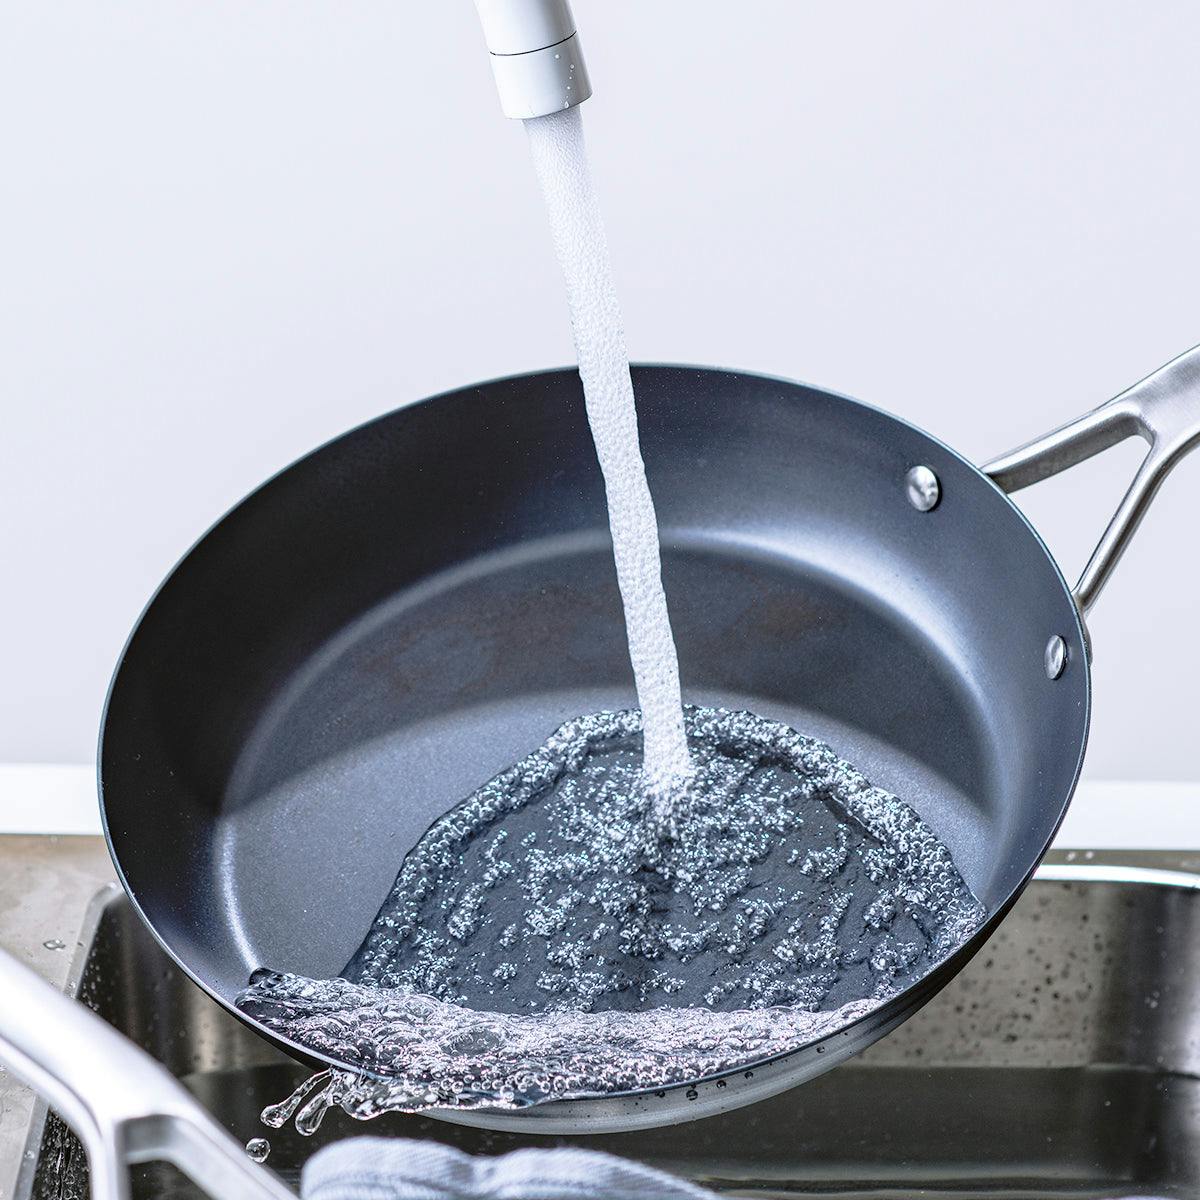 Merten & Storck Pre-Seasoned Carbon Steel Black Frying Pan, 10